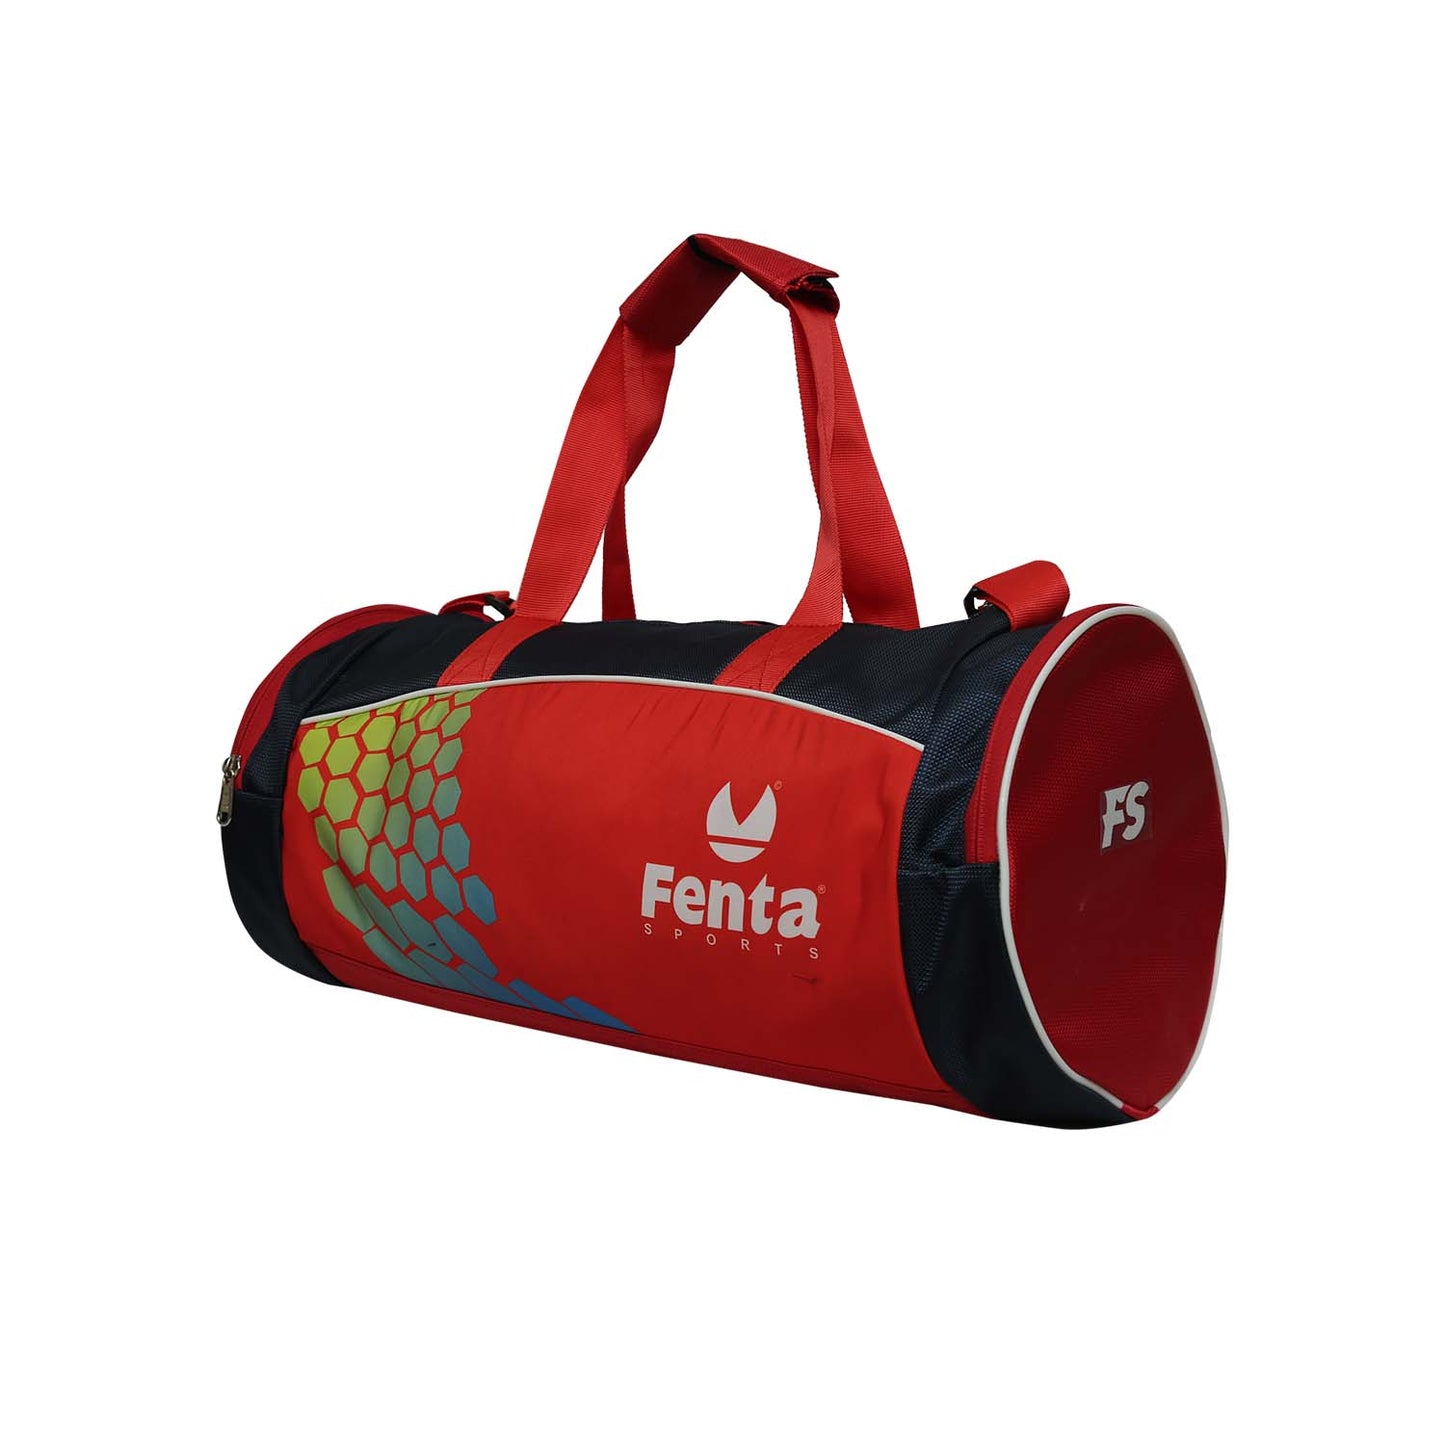 FENTA BOY'S TD-5 Large Red Travel Duffel / Gym Bag